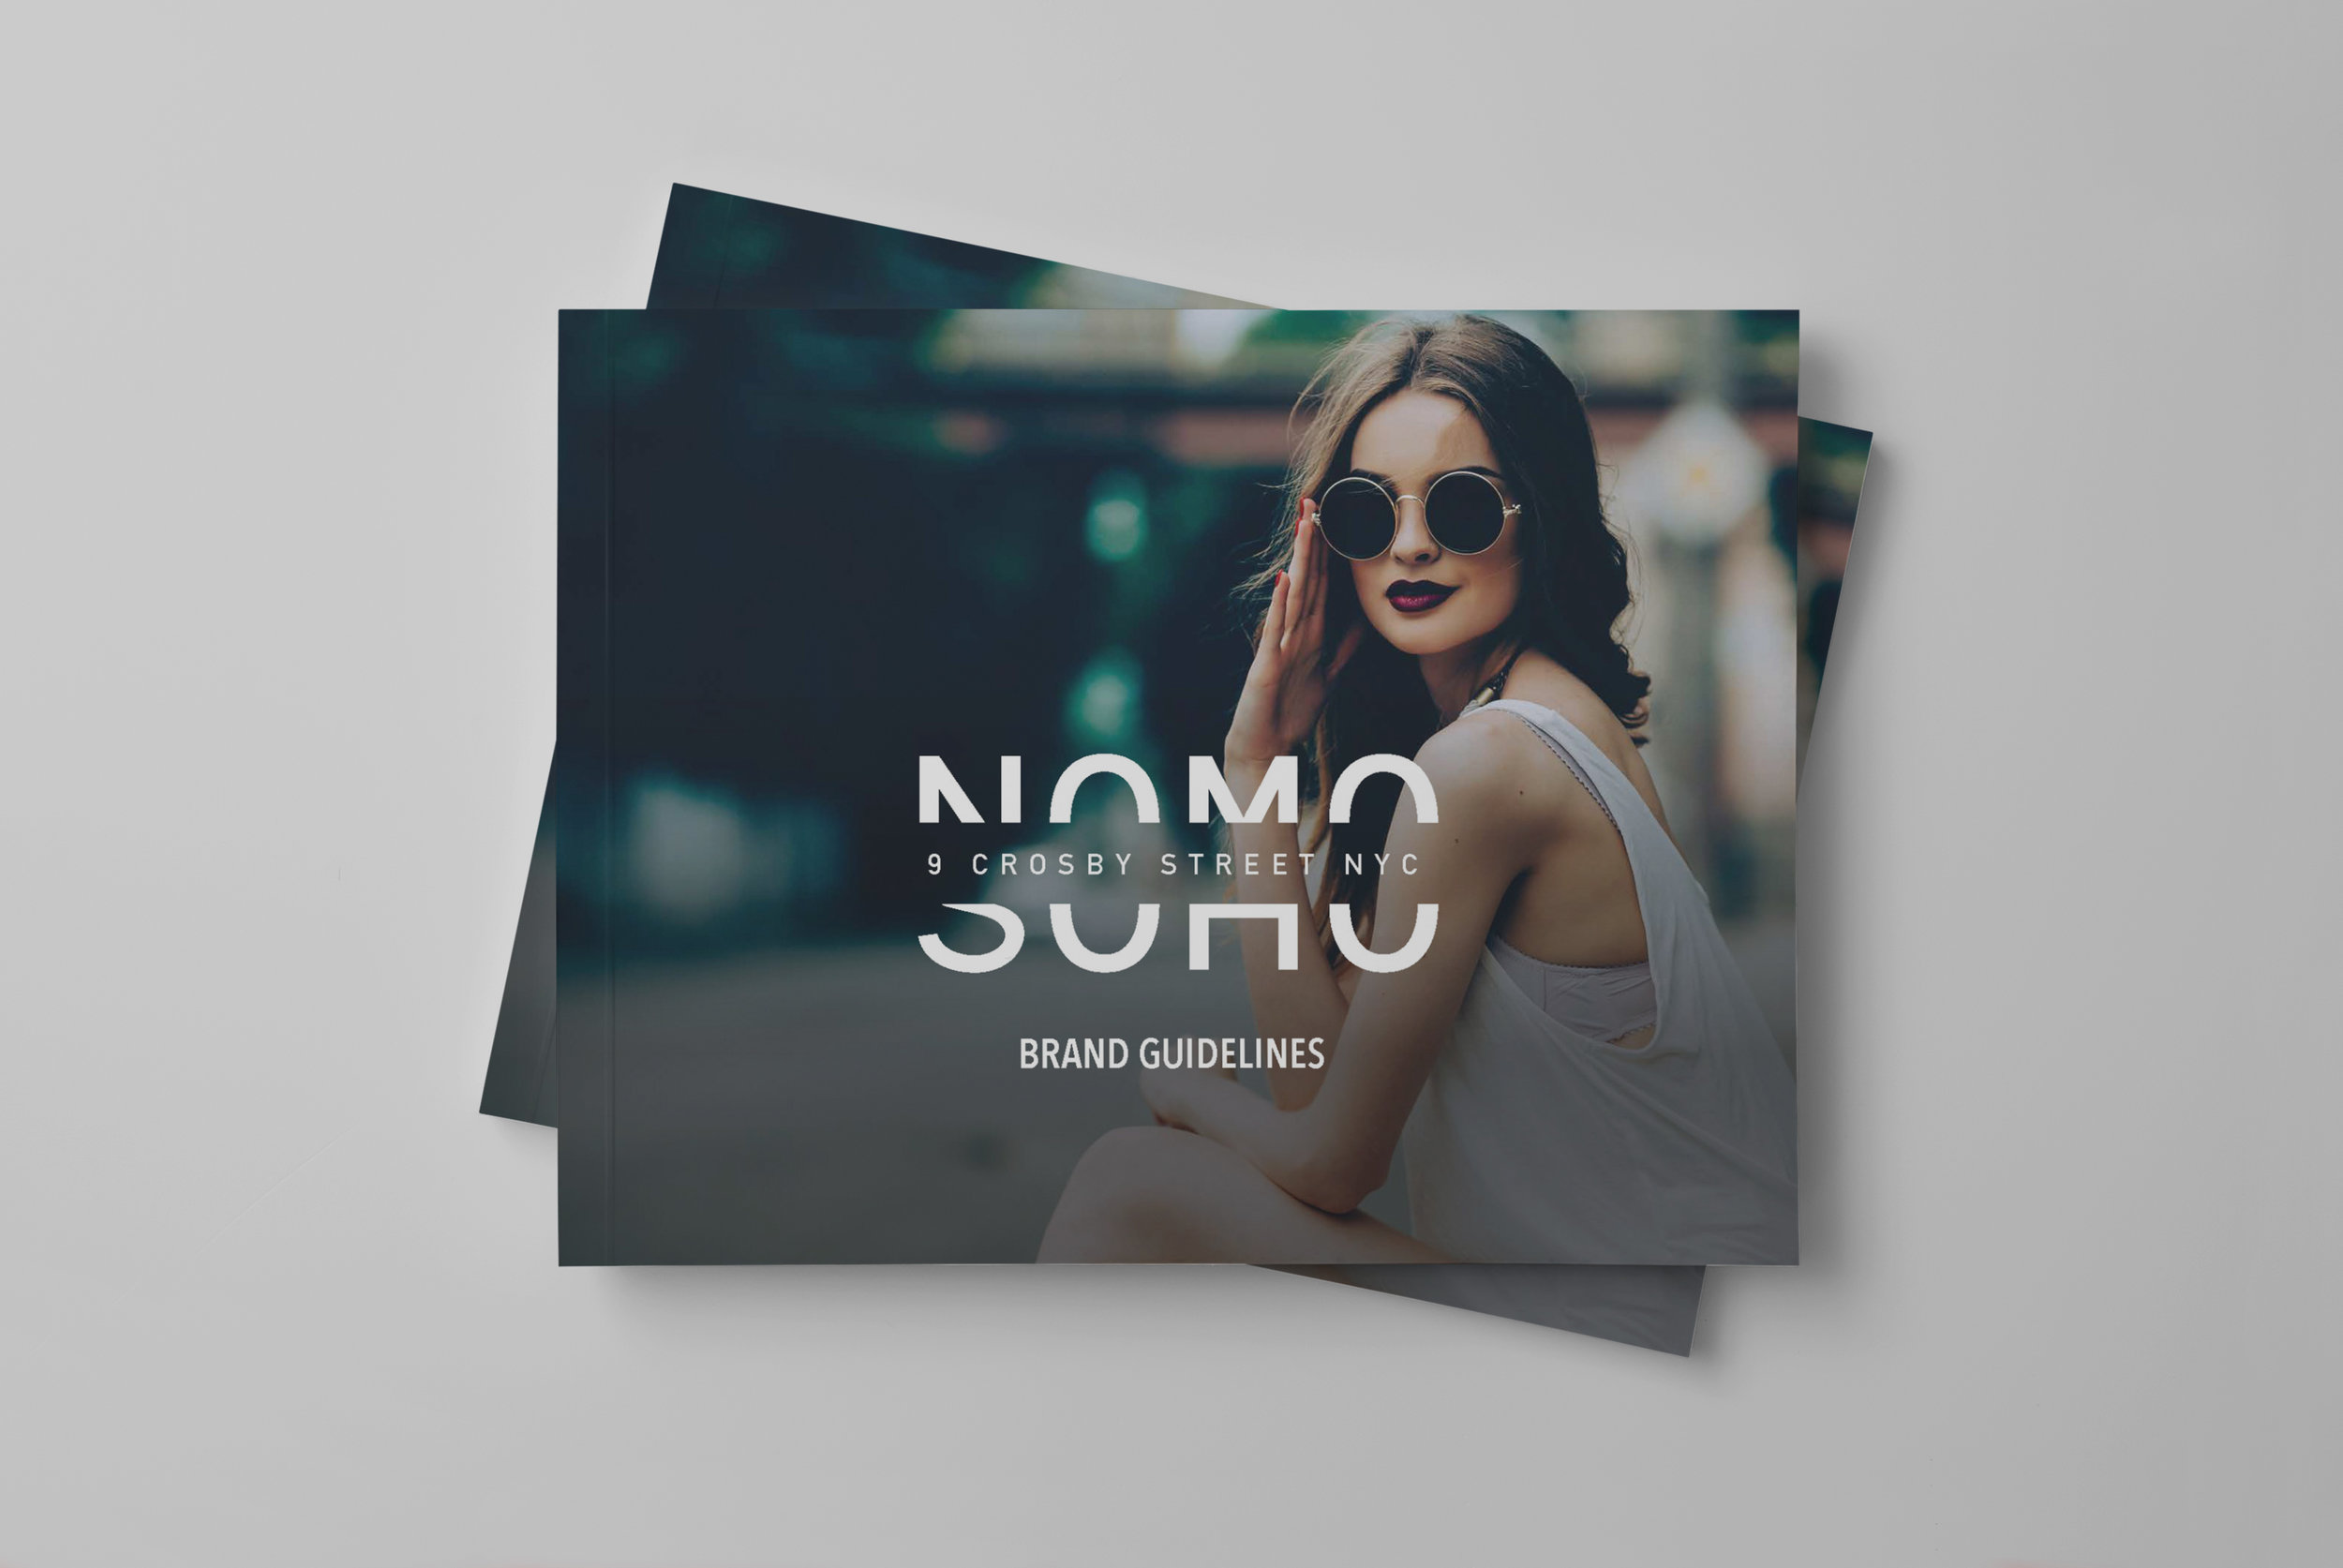 Nomo-brand-guide_front.jpg